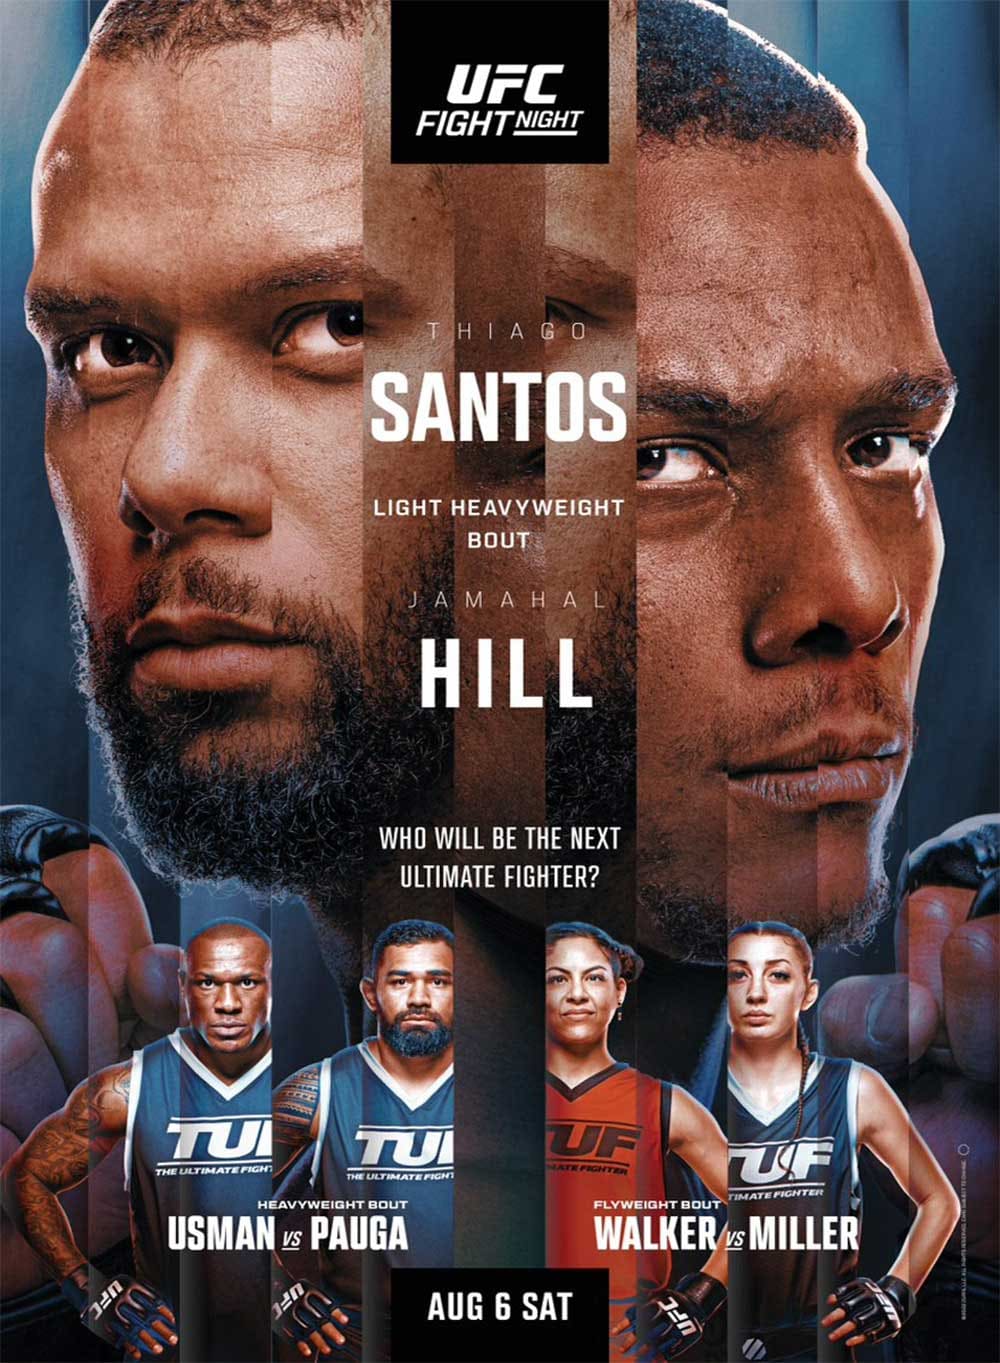 UFC on ESPN 40: Сантос - Хилл дата проведения, кард, участники и результаты